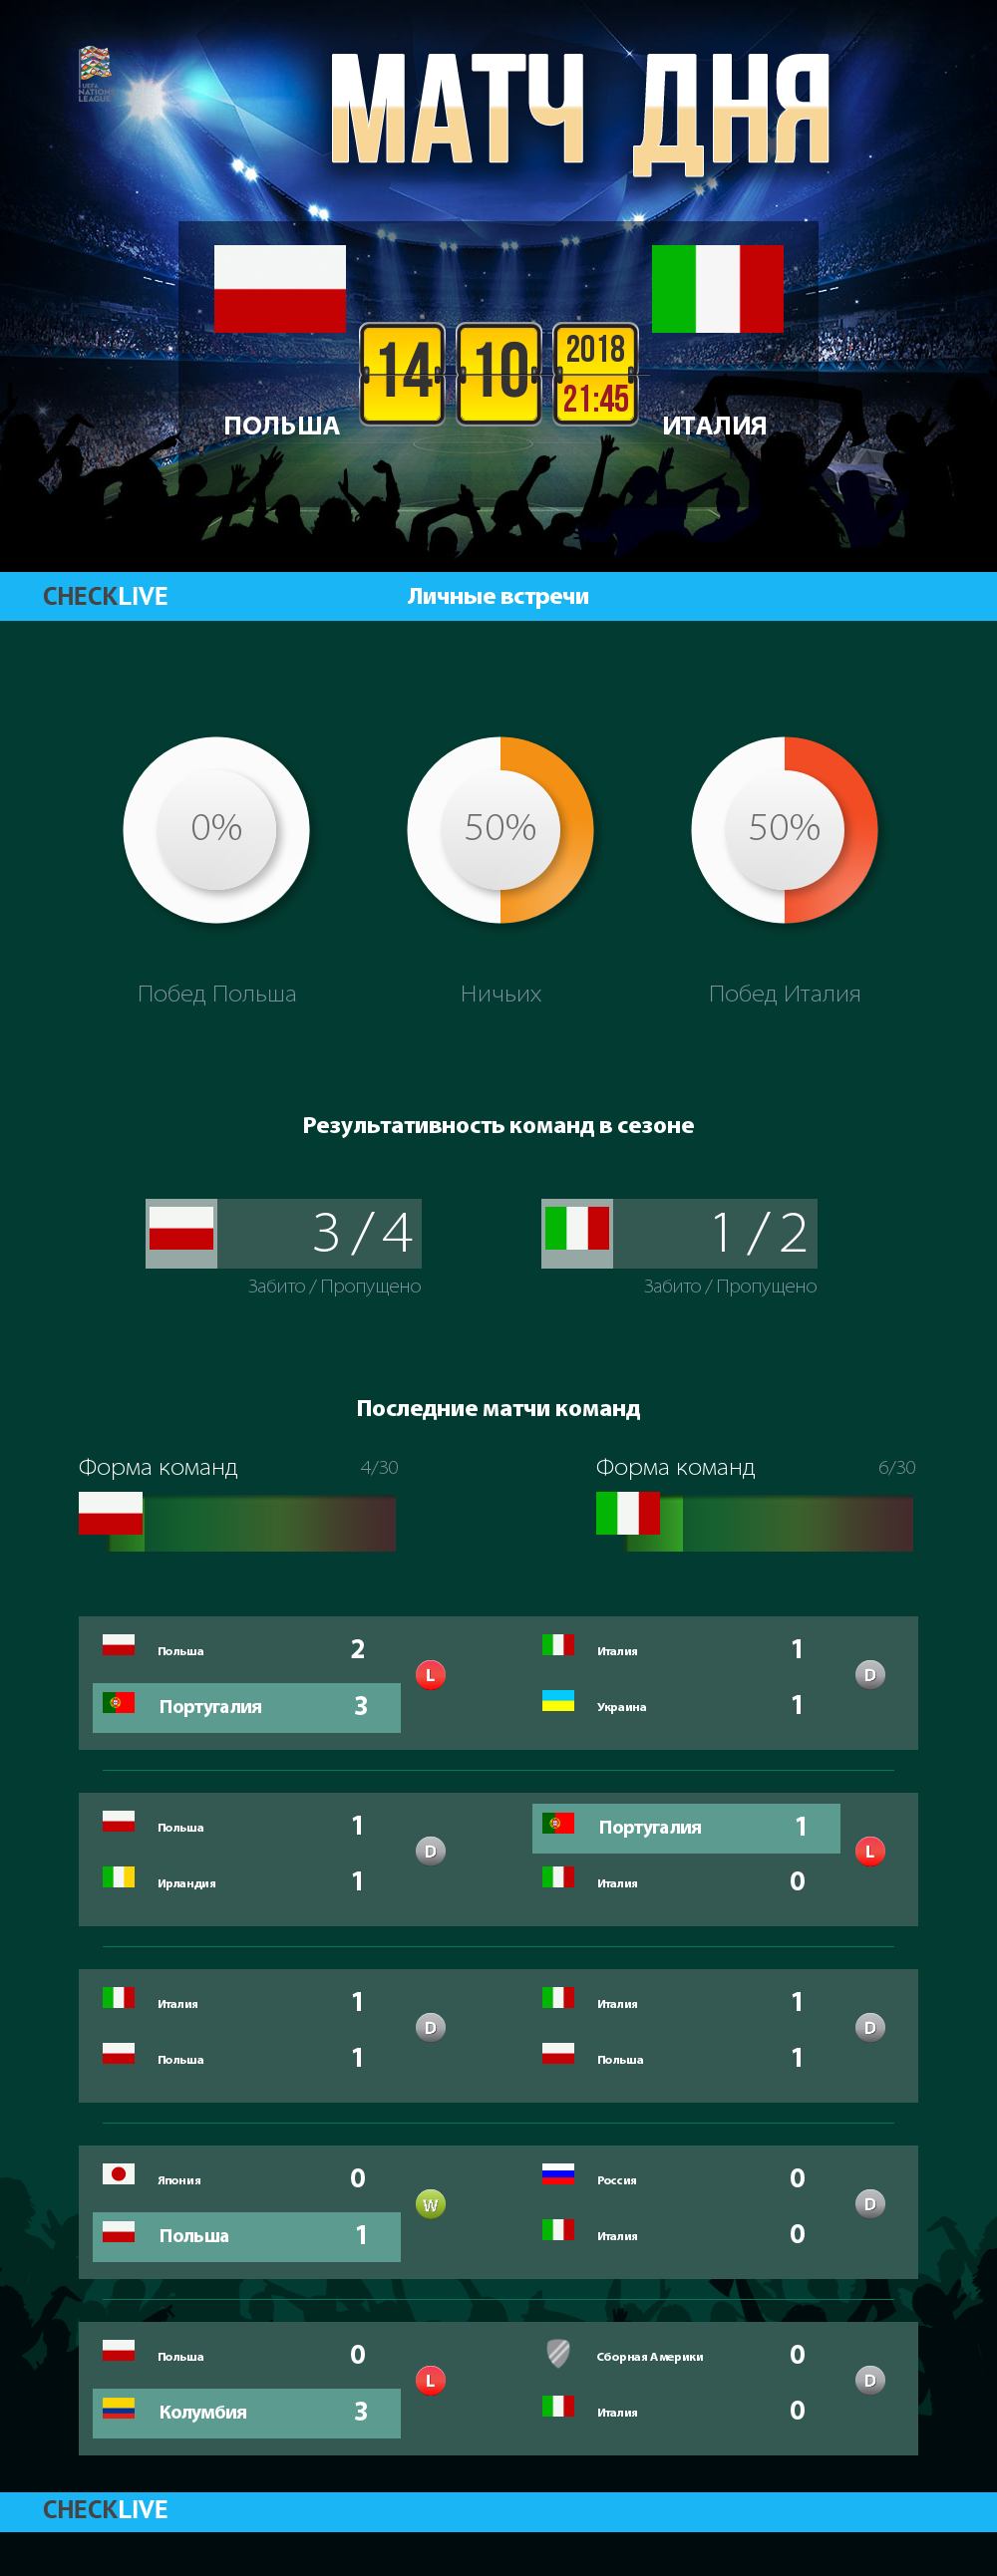 Инфографика Польша и Италия матч дня 14.10.2018